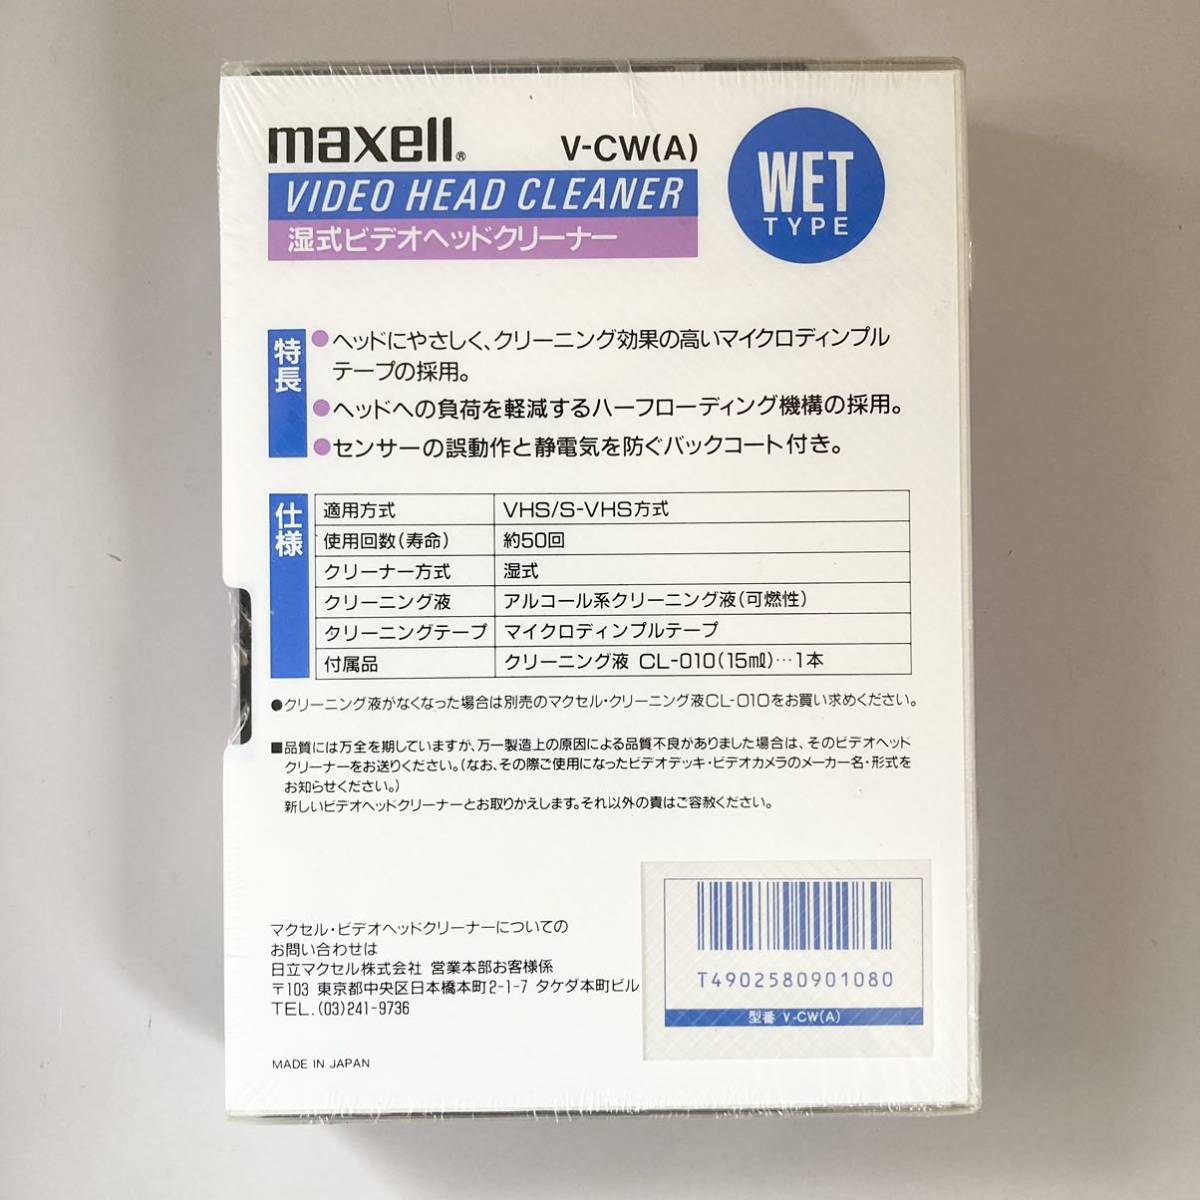 maxell マクセル S-VHS対応 VHS ビデオヘッドクリーナー湿式 V-CW(A)_画像2